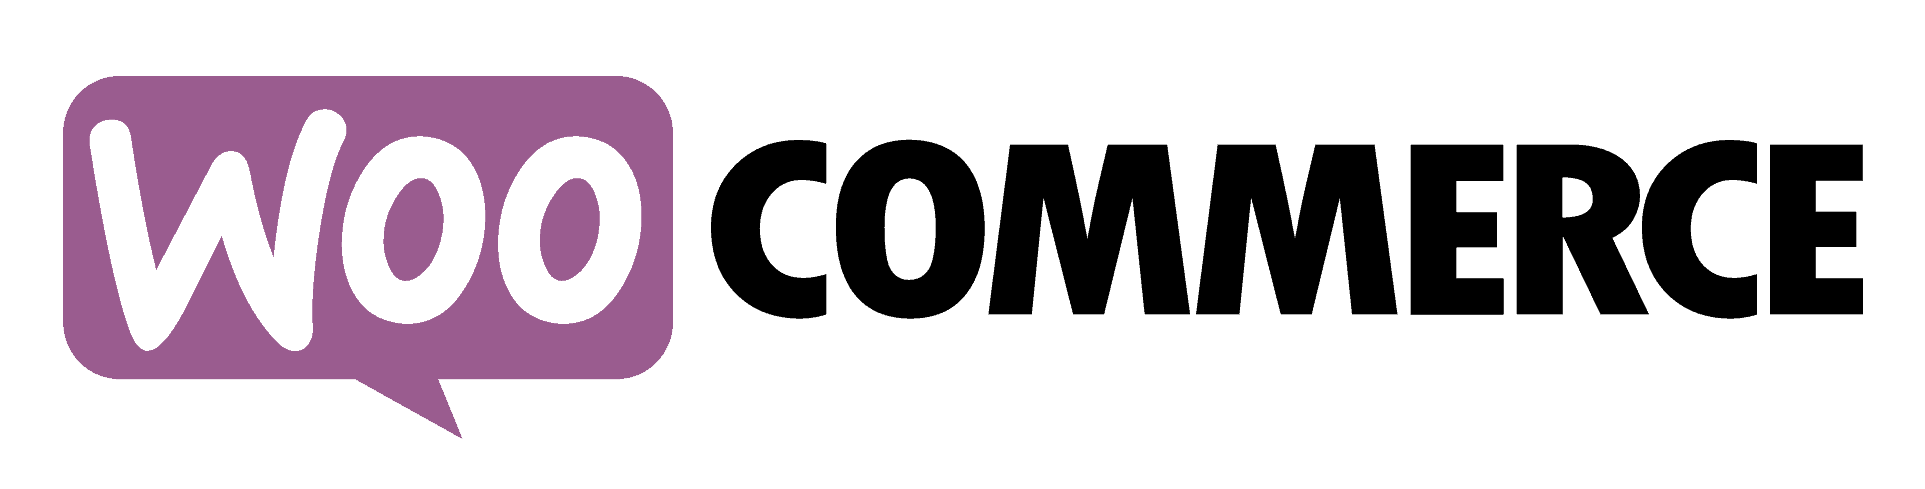 BREEX Nederland koppelen met WooCommerce